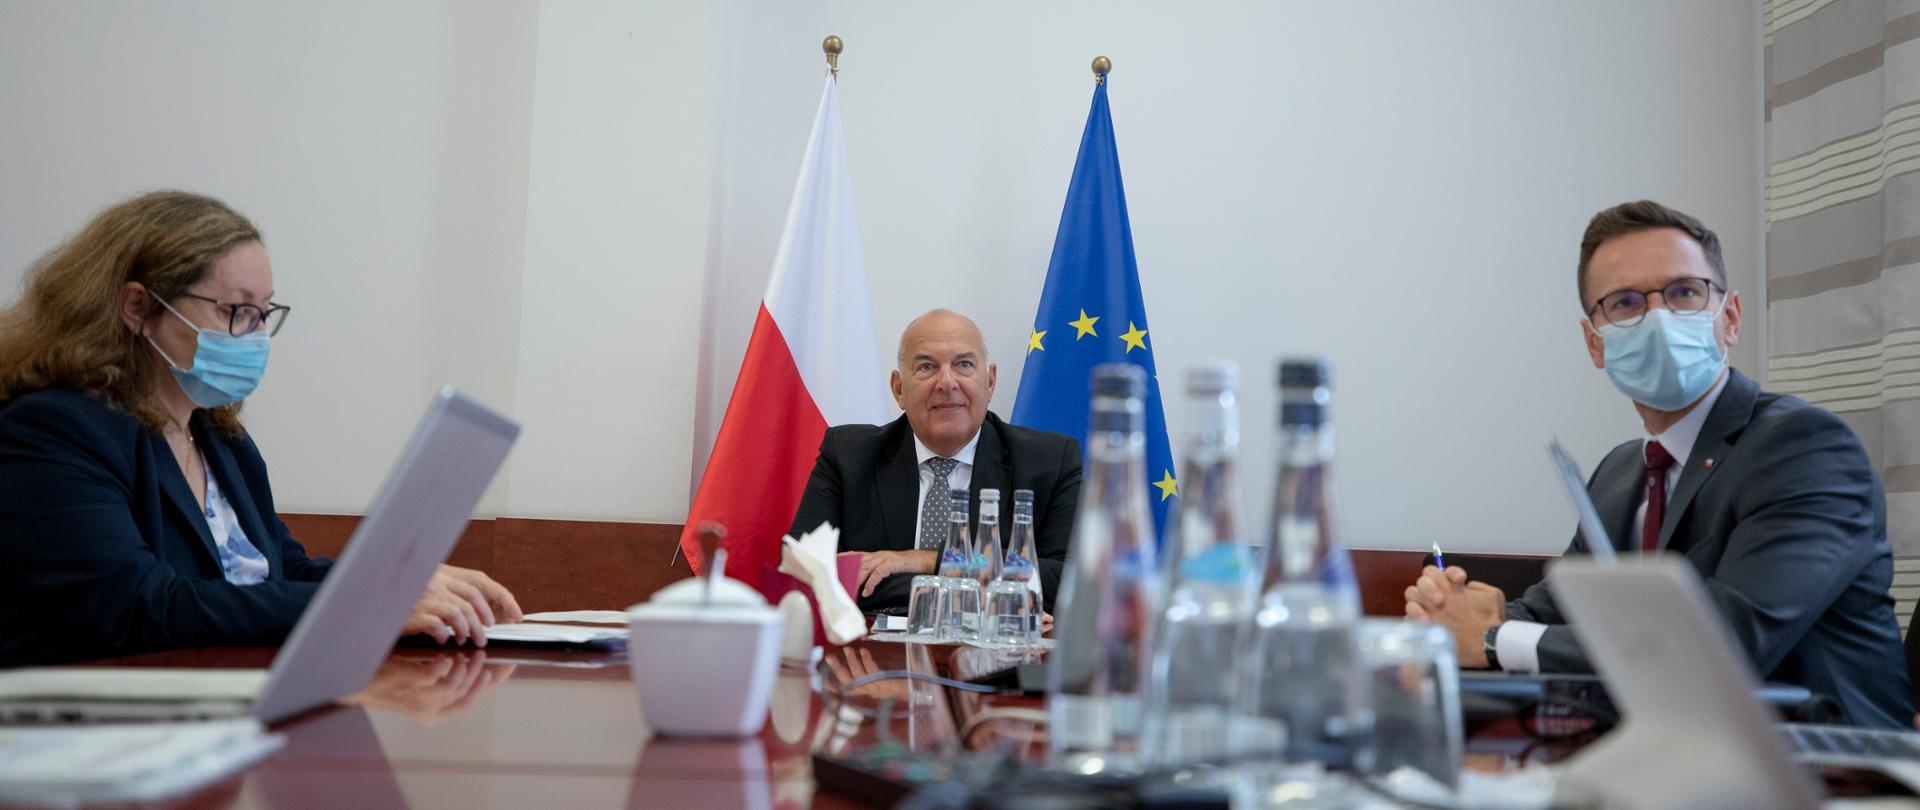 Minister Kościński, minister Buda, i dyrektor Kusina siedzą przy stole, na którym stoją komputery, za nimi stoi flaga Polska i UE 